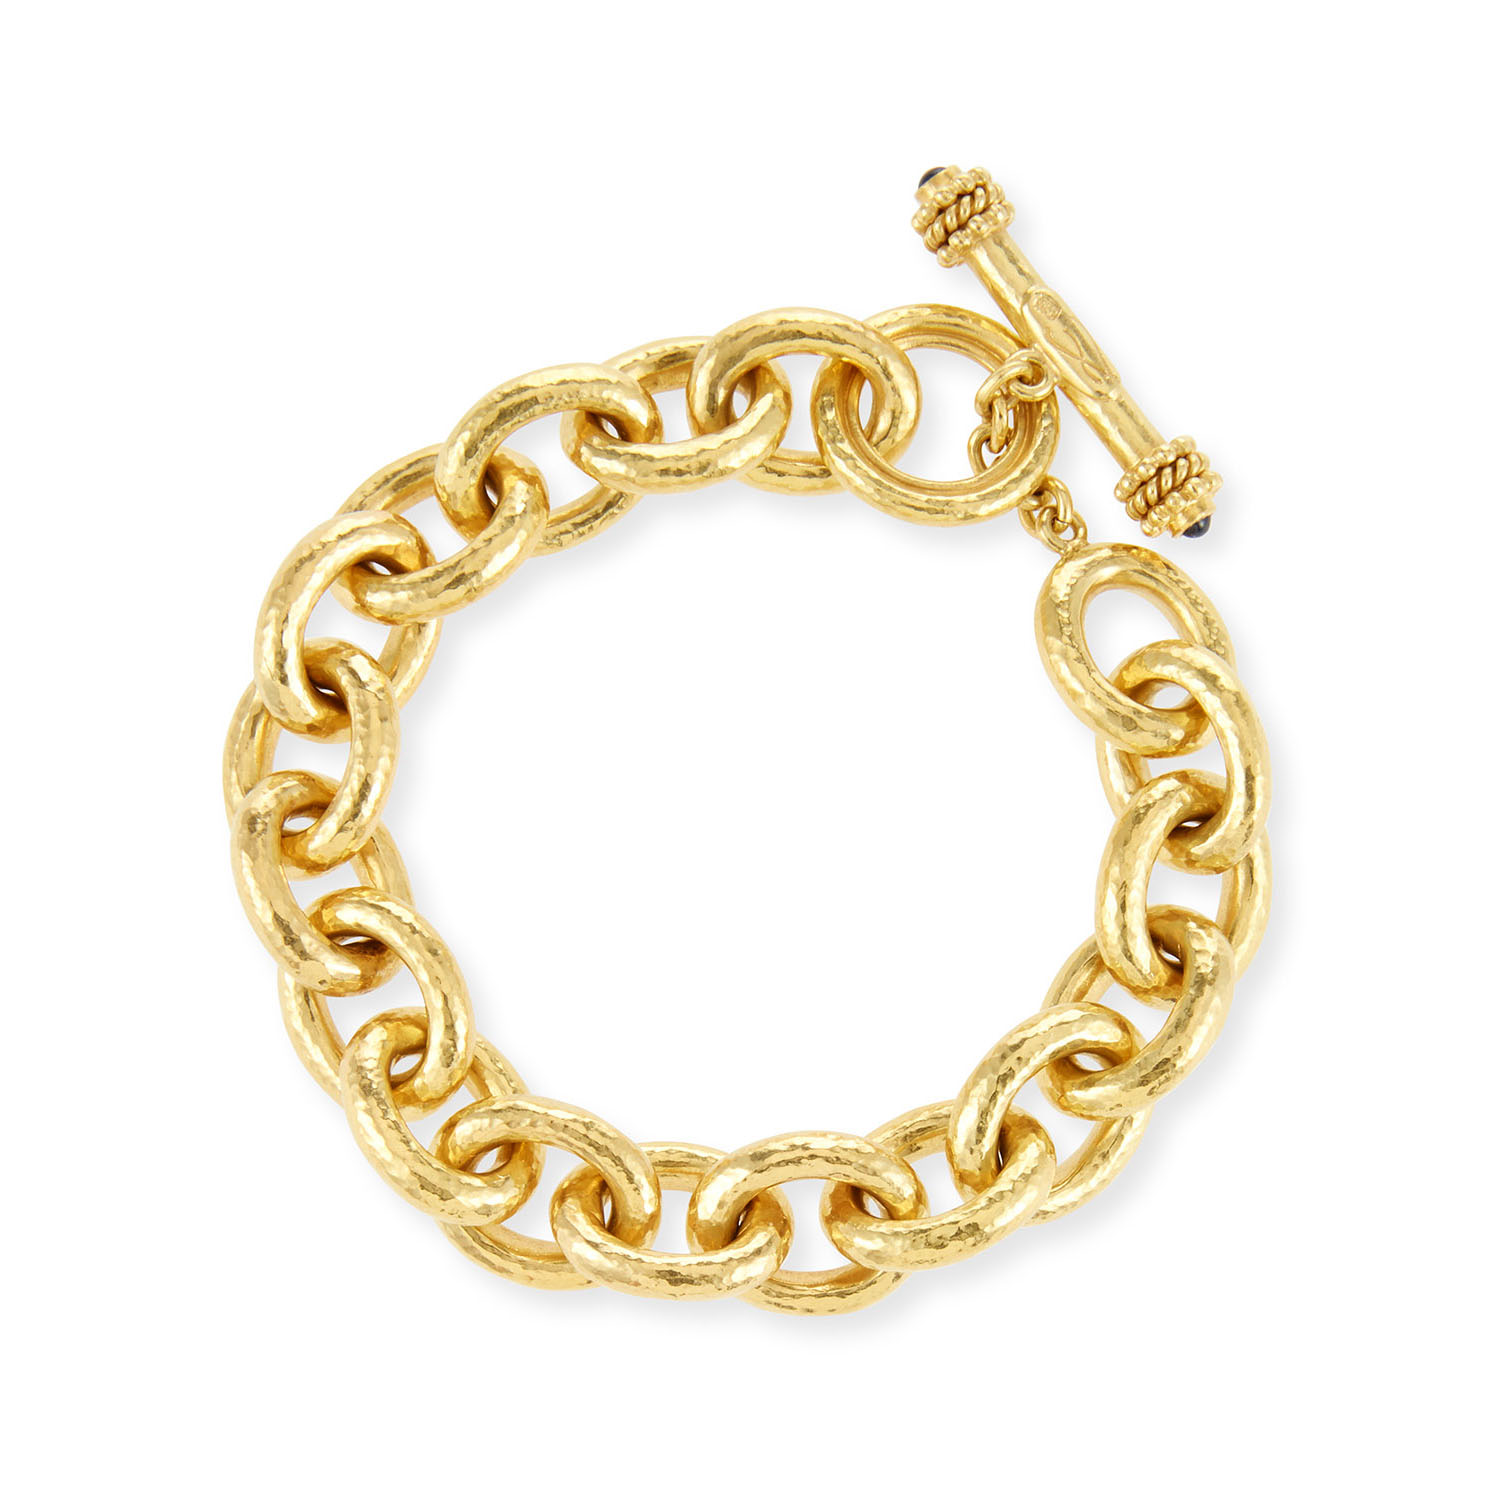 Grosir OEM/ODM Perhiasan Gelang Emas 19k Kustom dibuat dengan produsen OEM perhiasan desain Anda